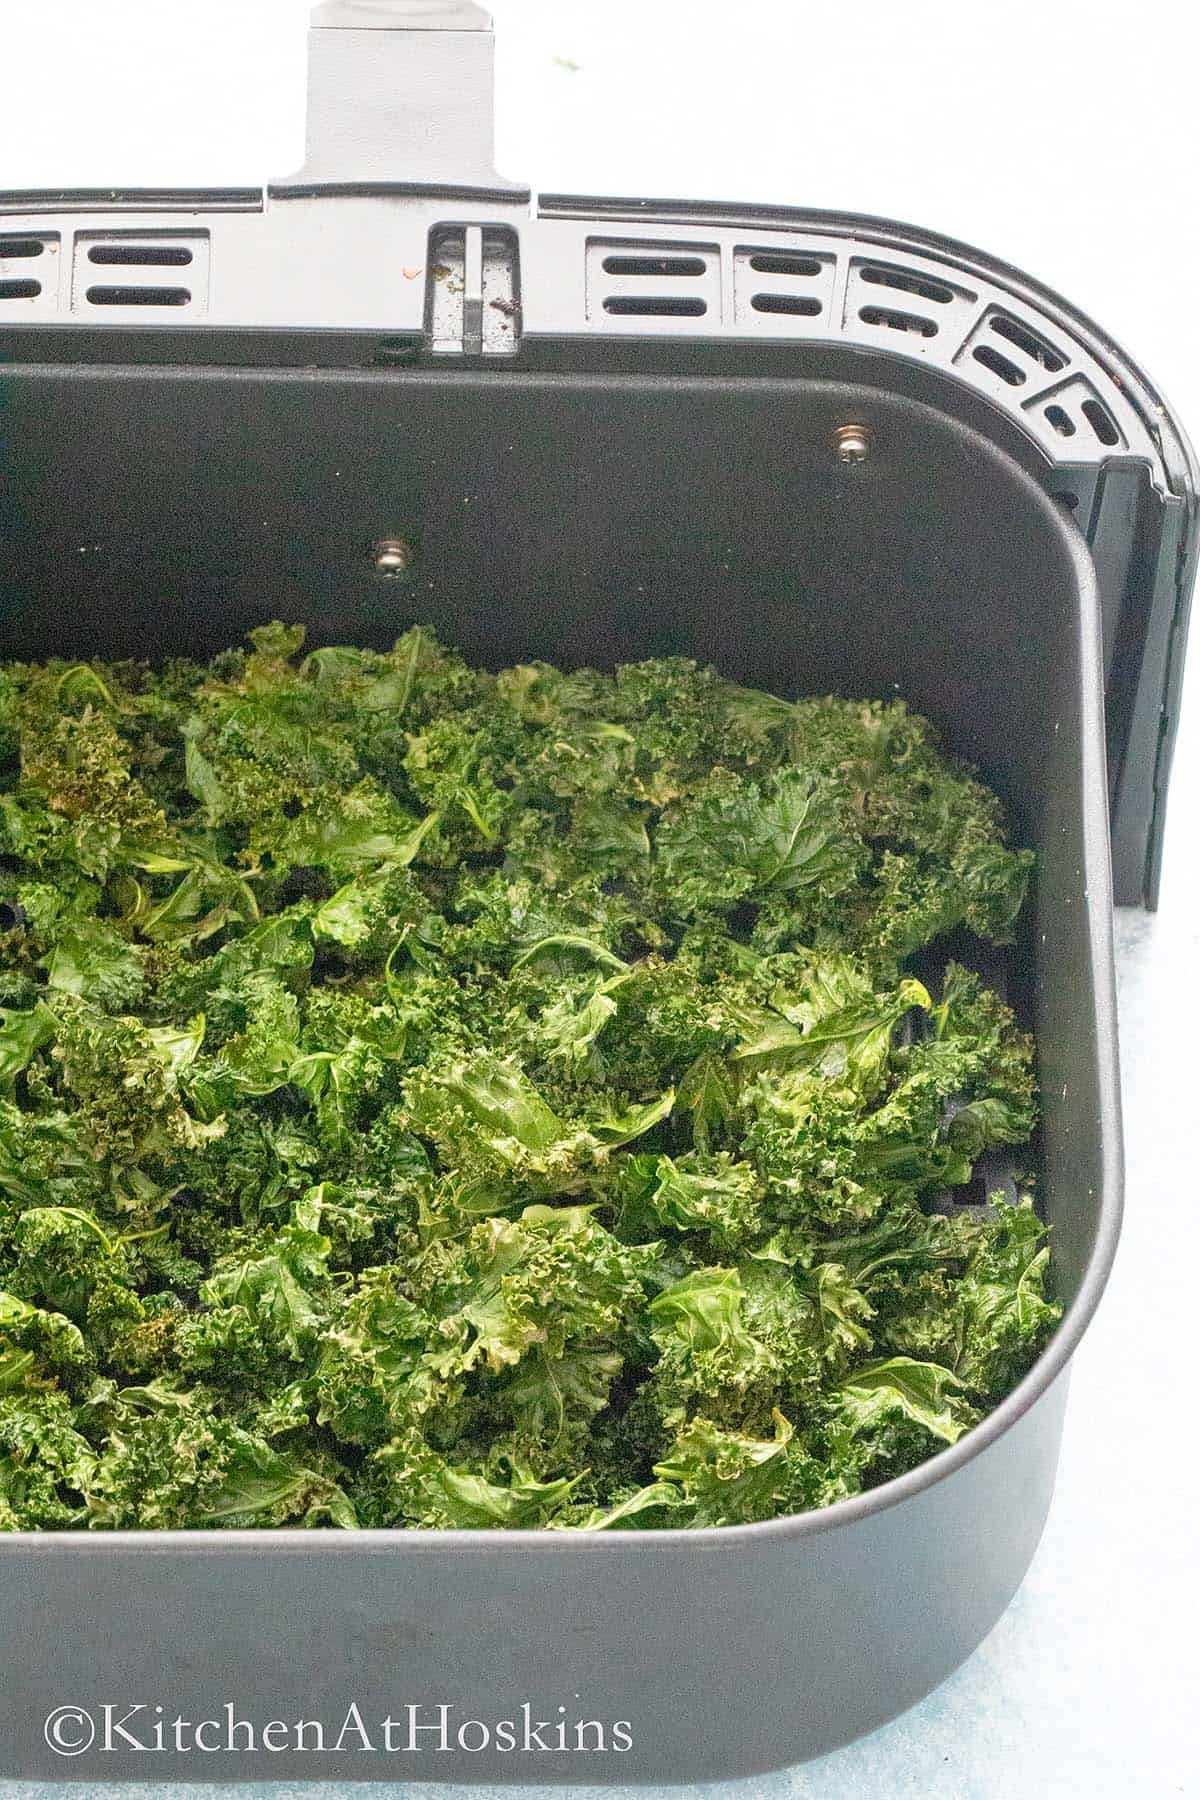 crispy kale chips in an air fryer basket.